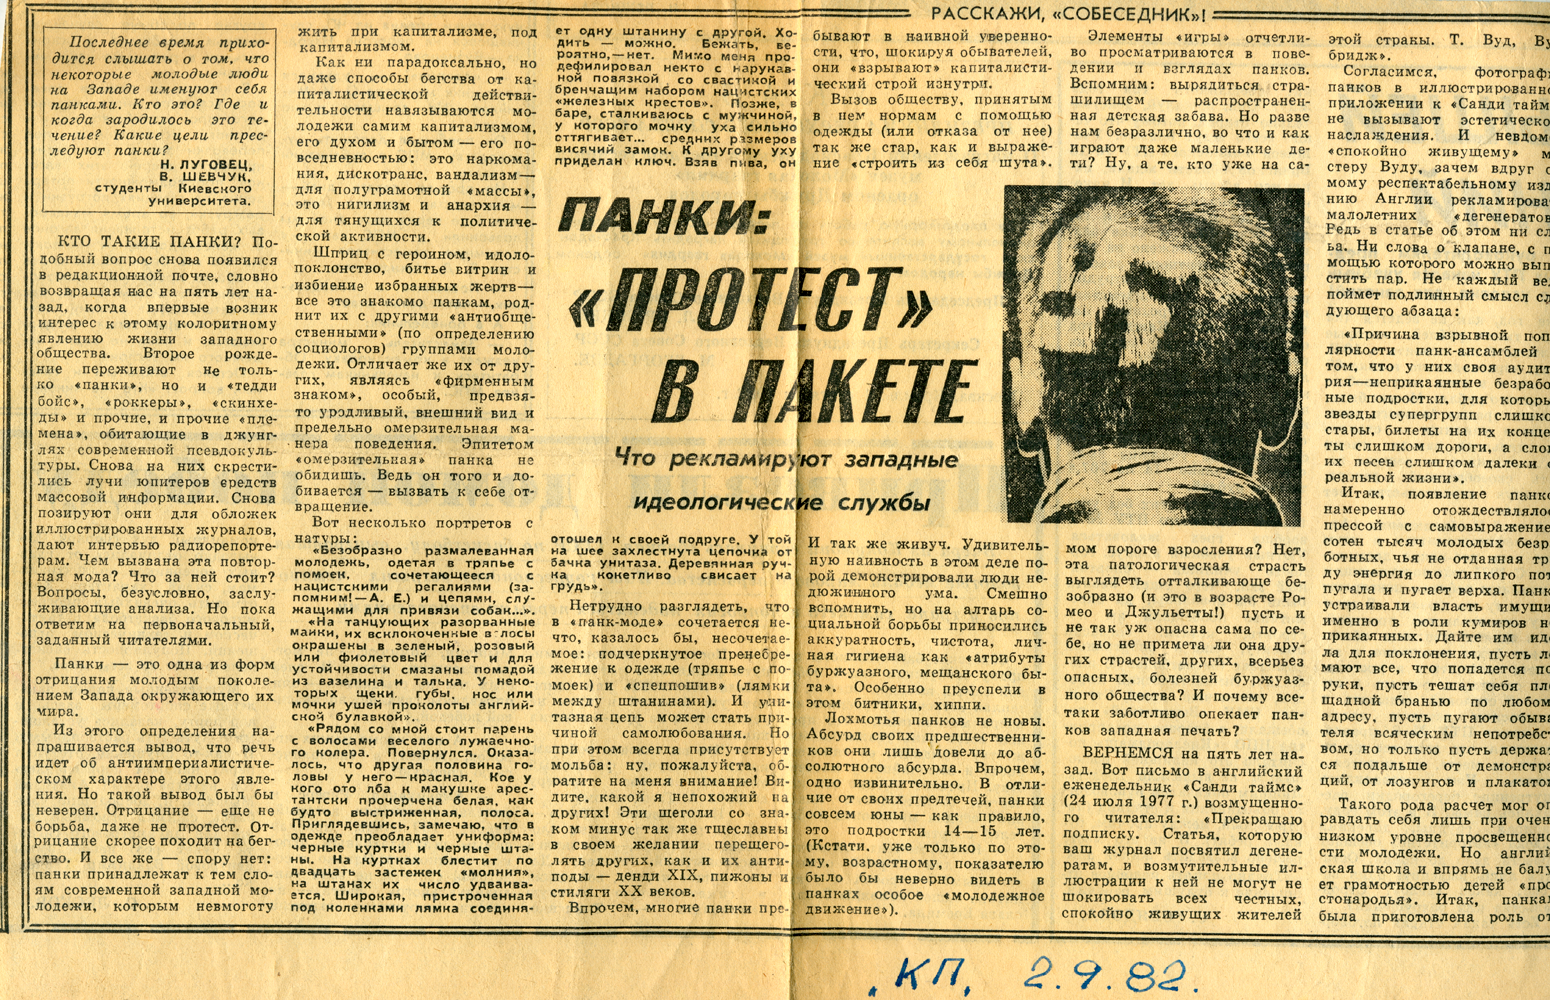 Статья про панк и неофашизм в «Комсомольской правде», 1982 год